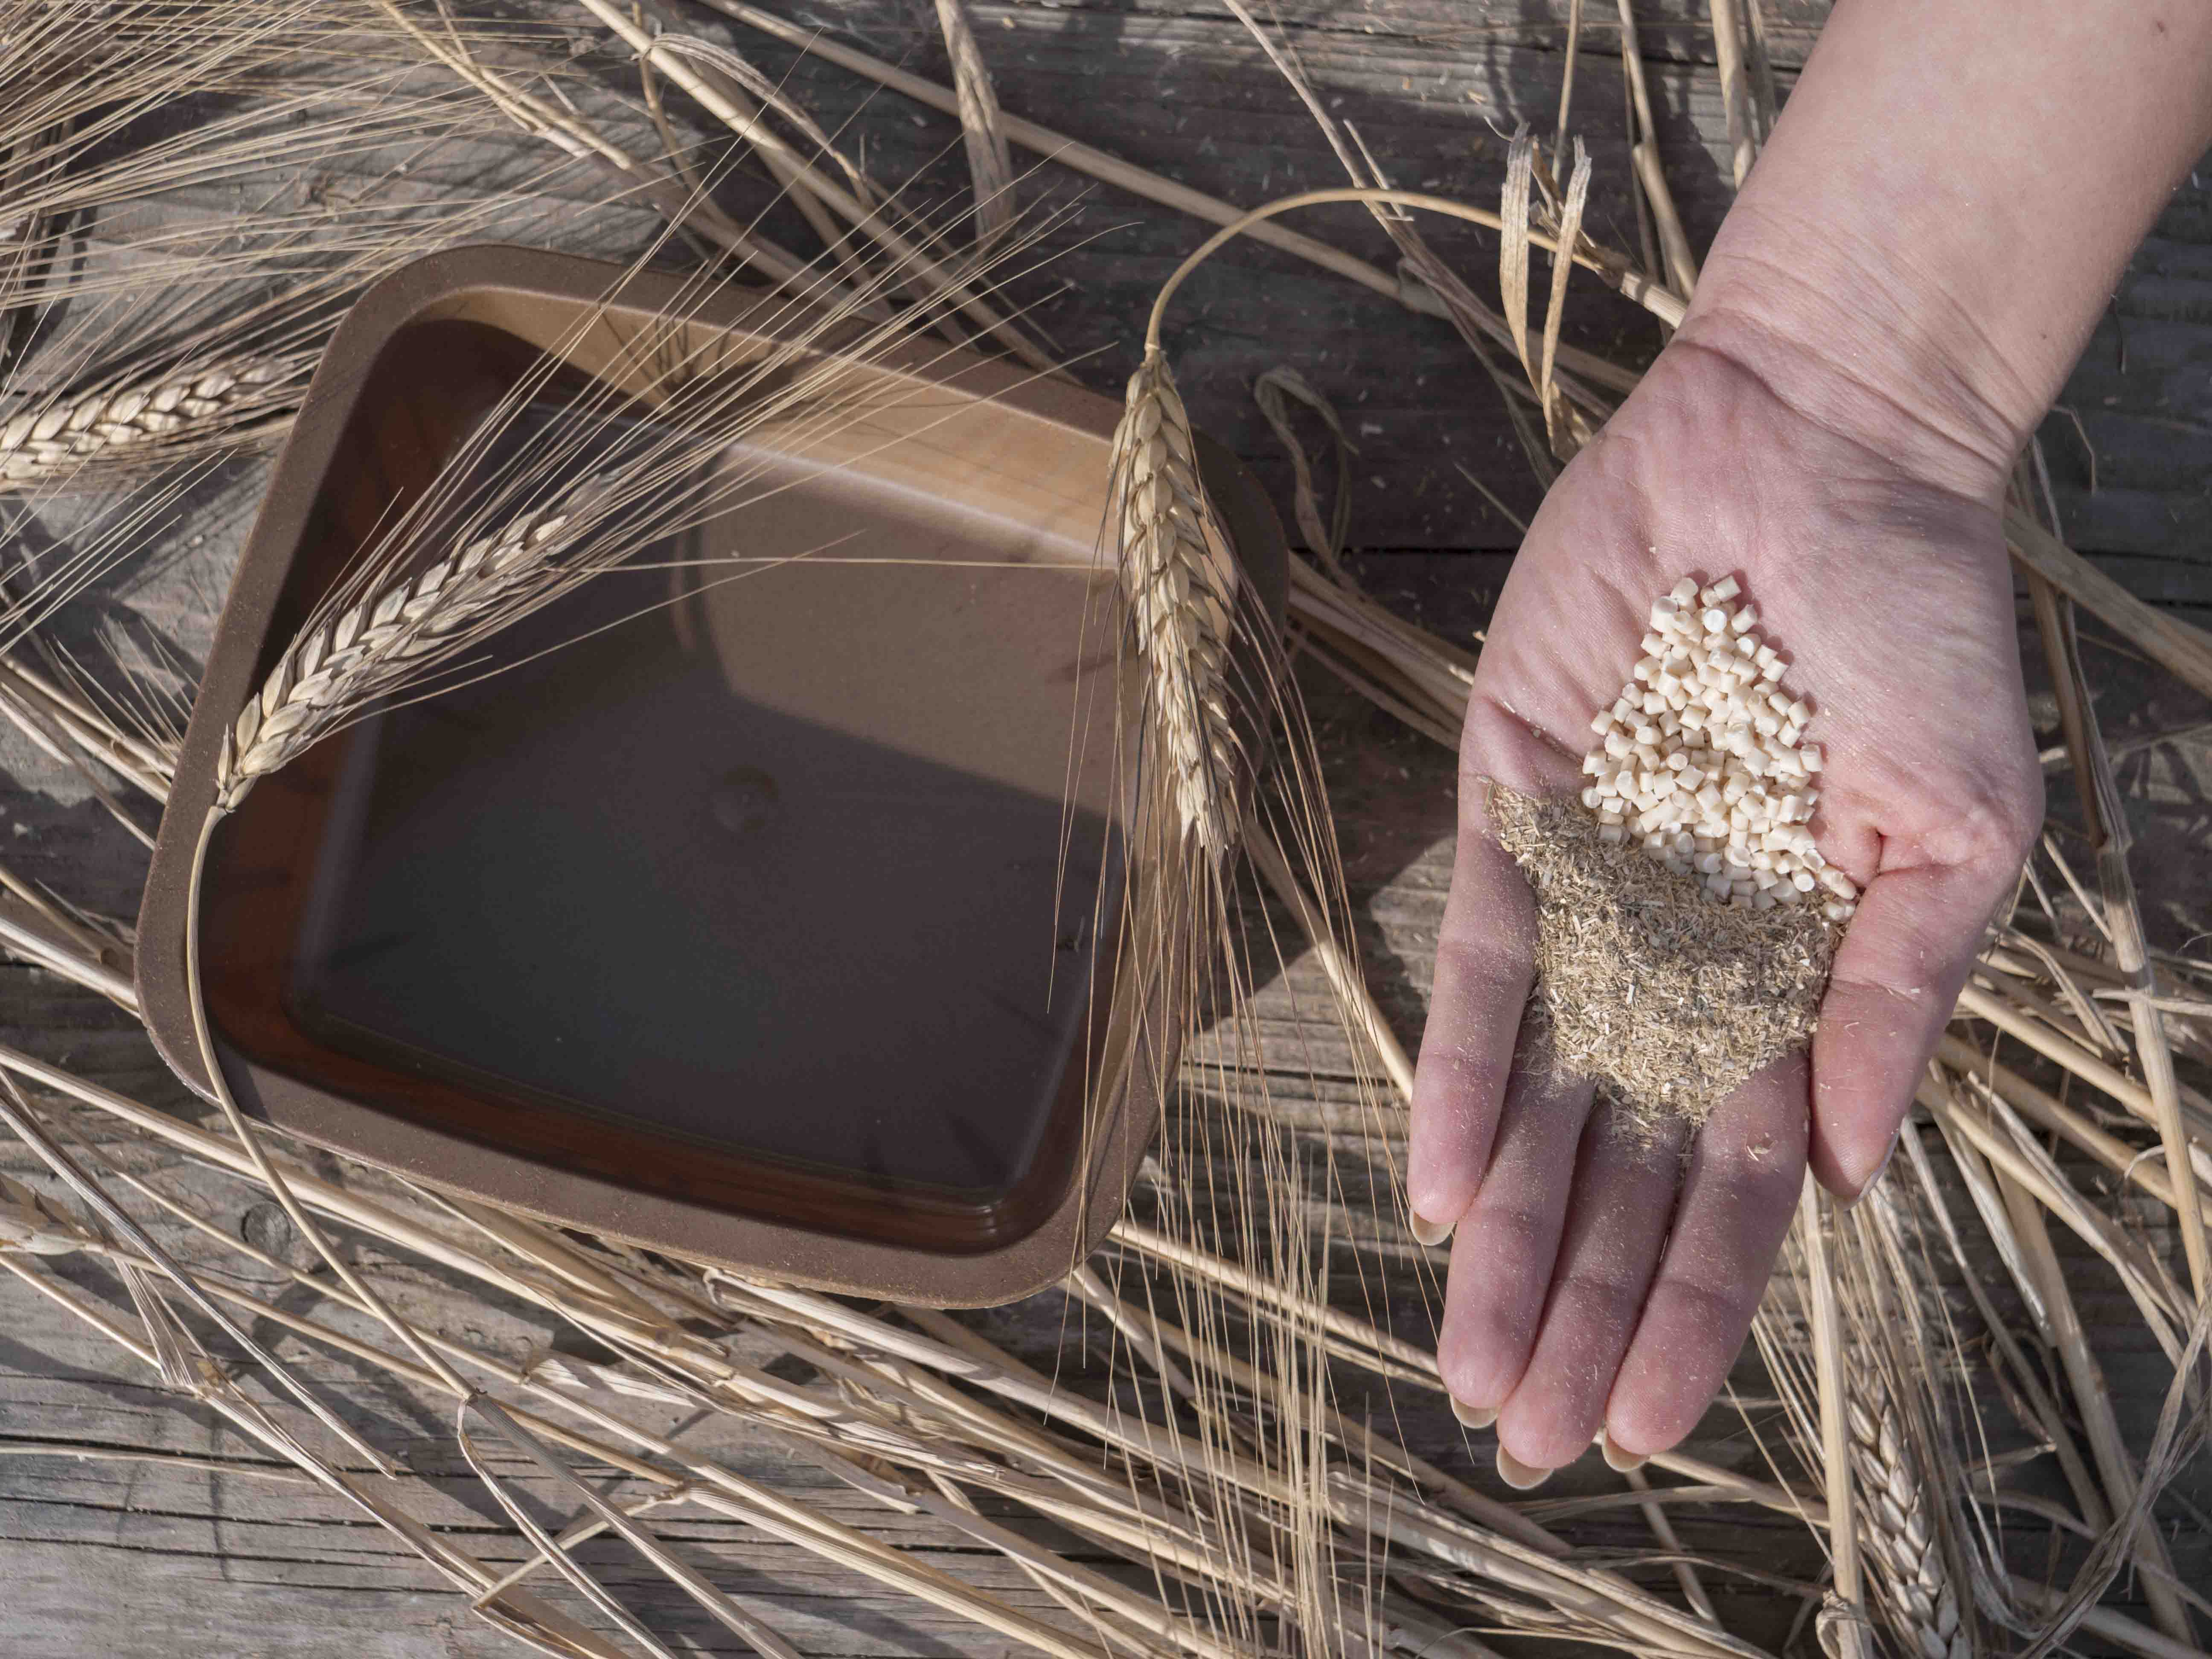 Verpackung aus Biopolymeren aus Resten der Weizenstrohverarbeitung